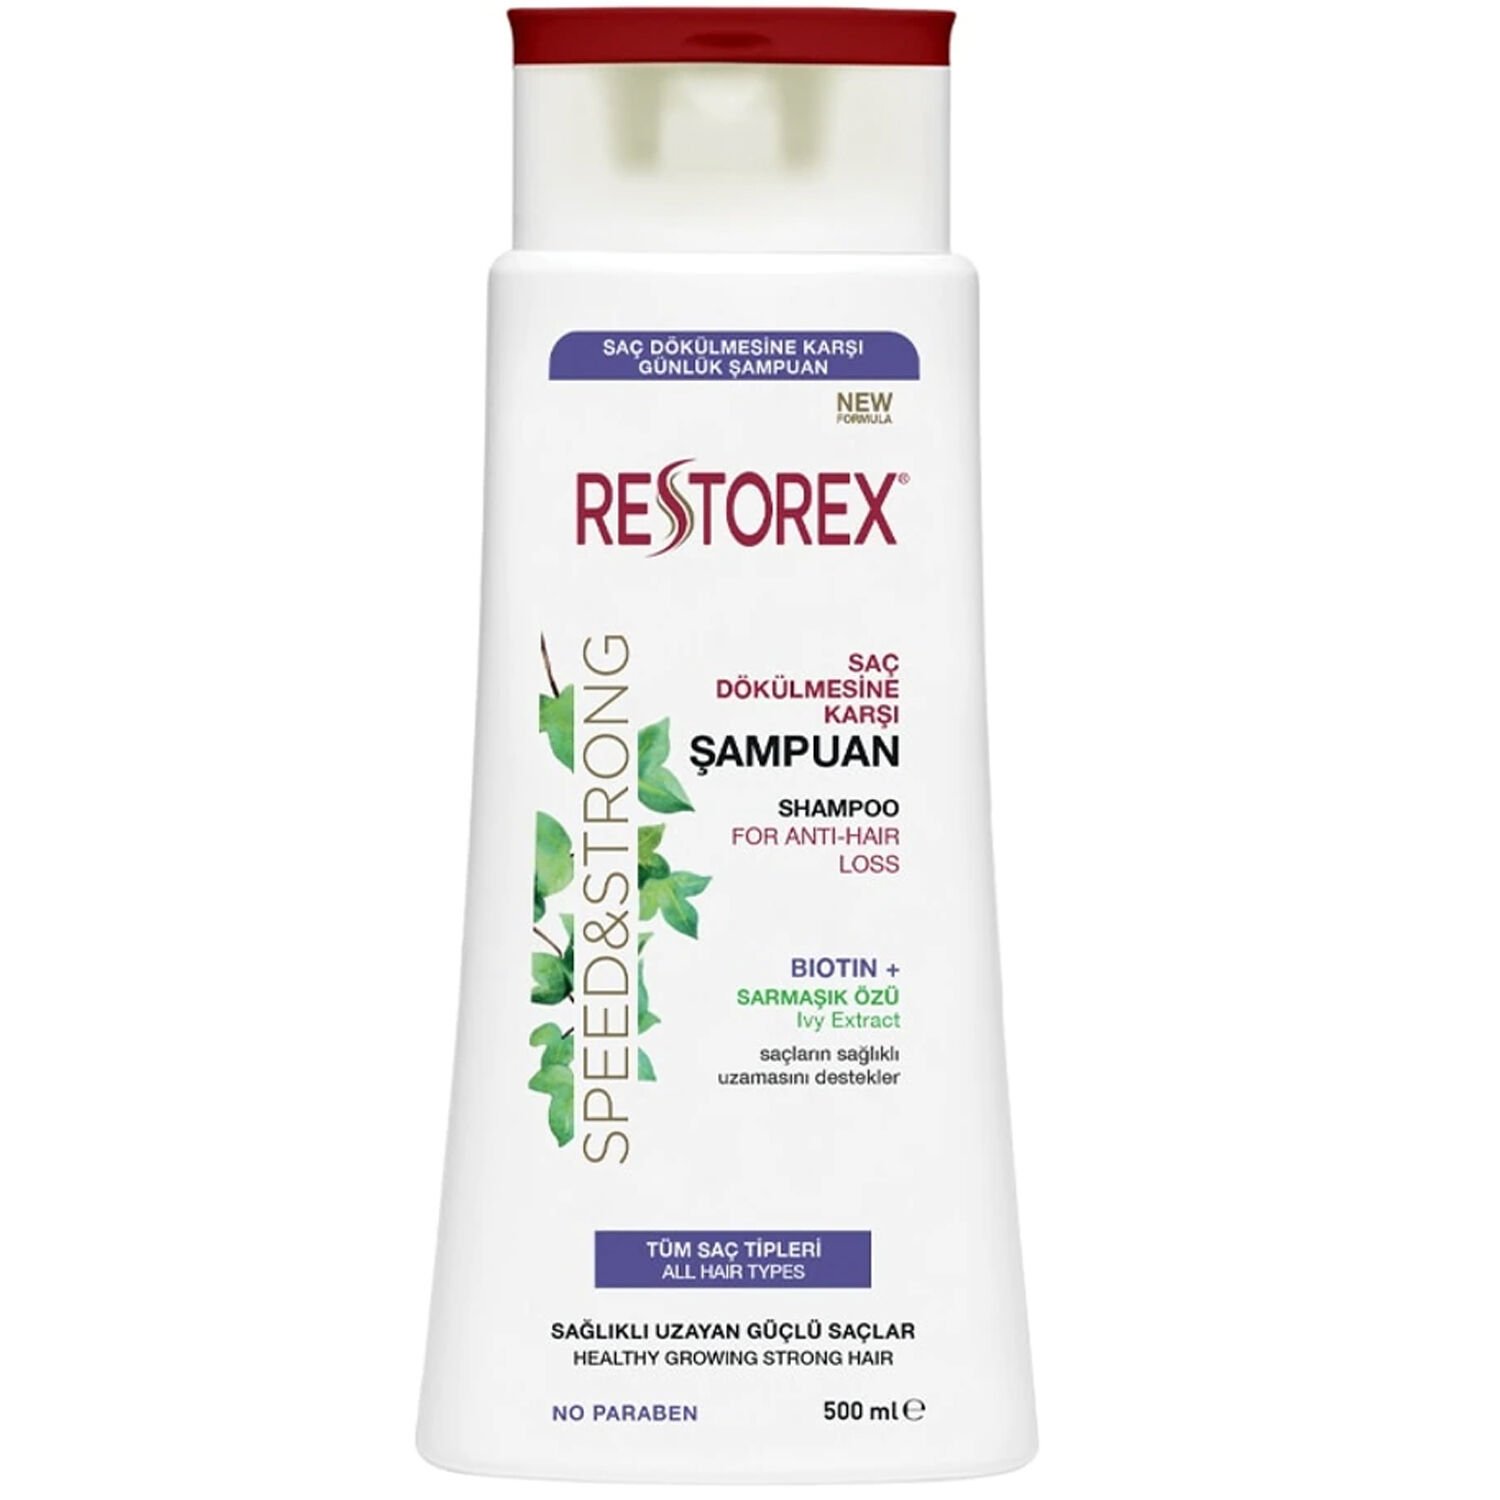 Restorex Saç Dökülmesine Karşı Ekstra Direnç Şampuanı 500 ml